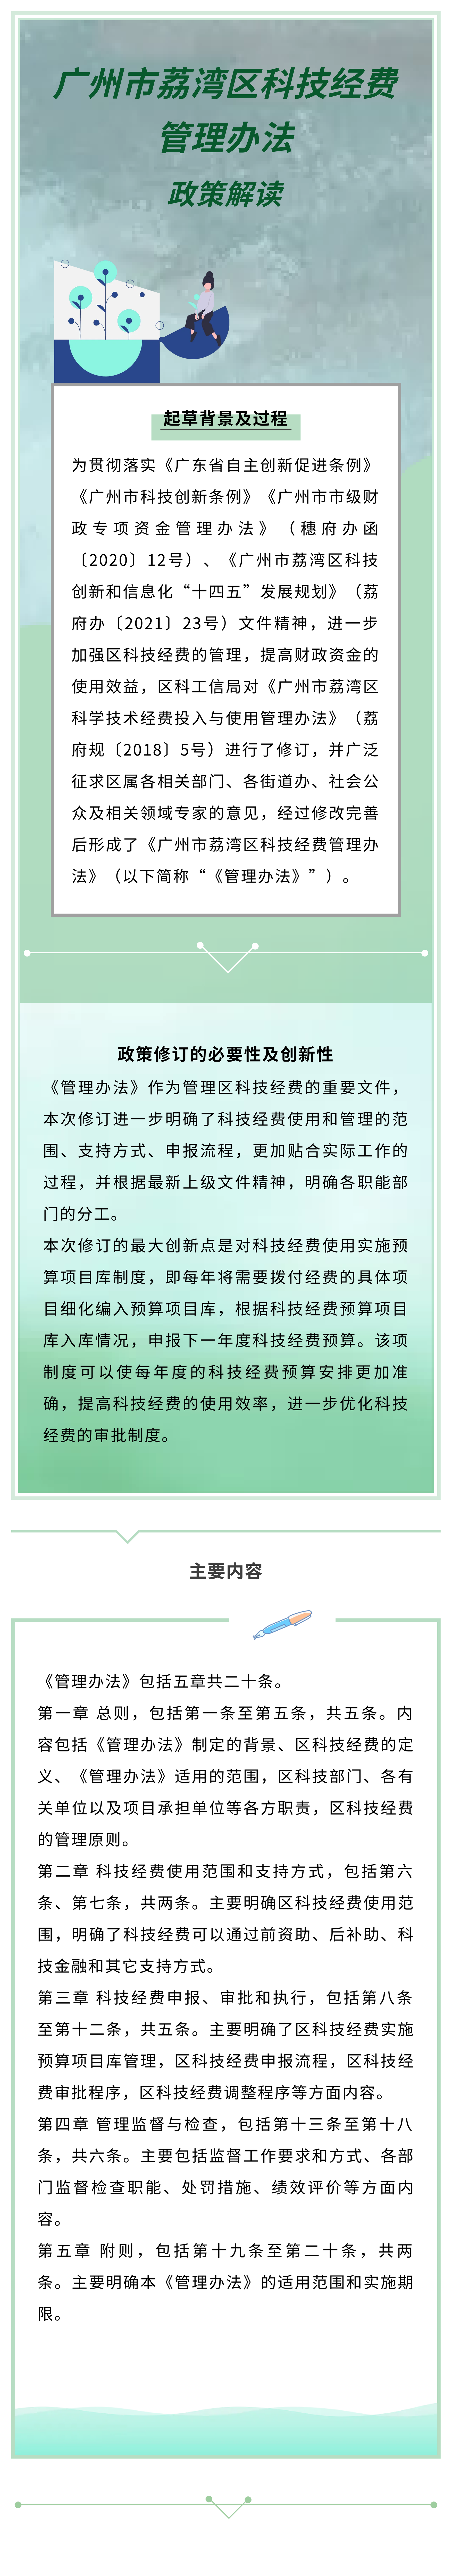 《广州市荔湾区科技经费管理办法》政策解读.png